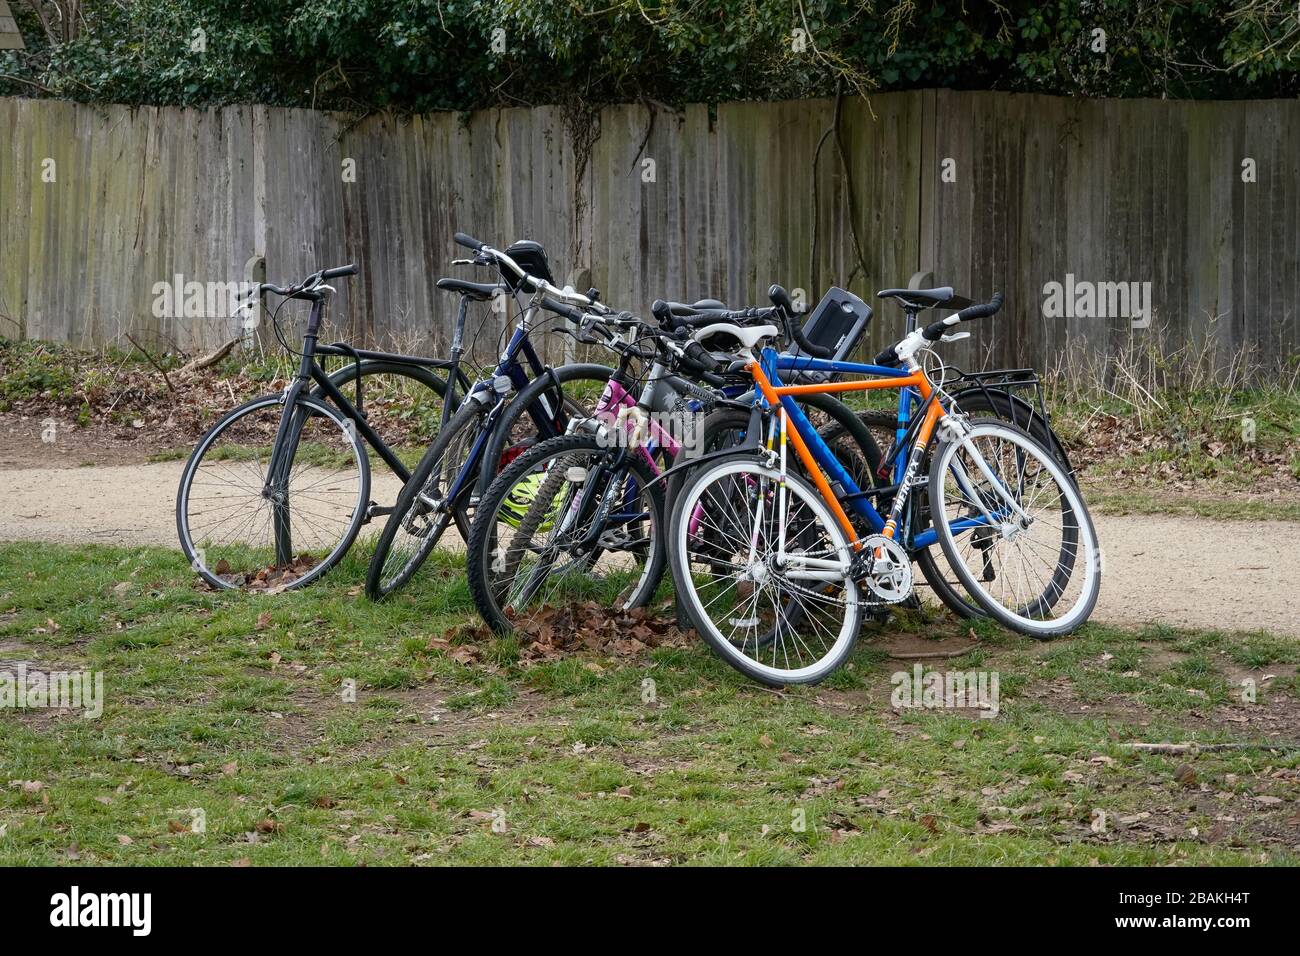 Fahrräder, die am Tor des Richmond Park eingesperrt sind, da Radfahrer wegen der hohen sozialen Distanzierung aus dem Richmond Park verbannt werden, da Großbritannien weiterhin in der Blockierung ist, um die Ausbreitung des Coronavirus einzudämmen. Stockfoto